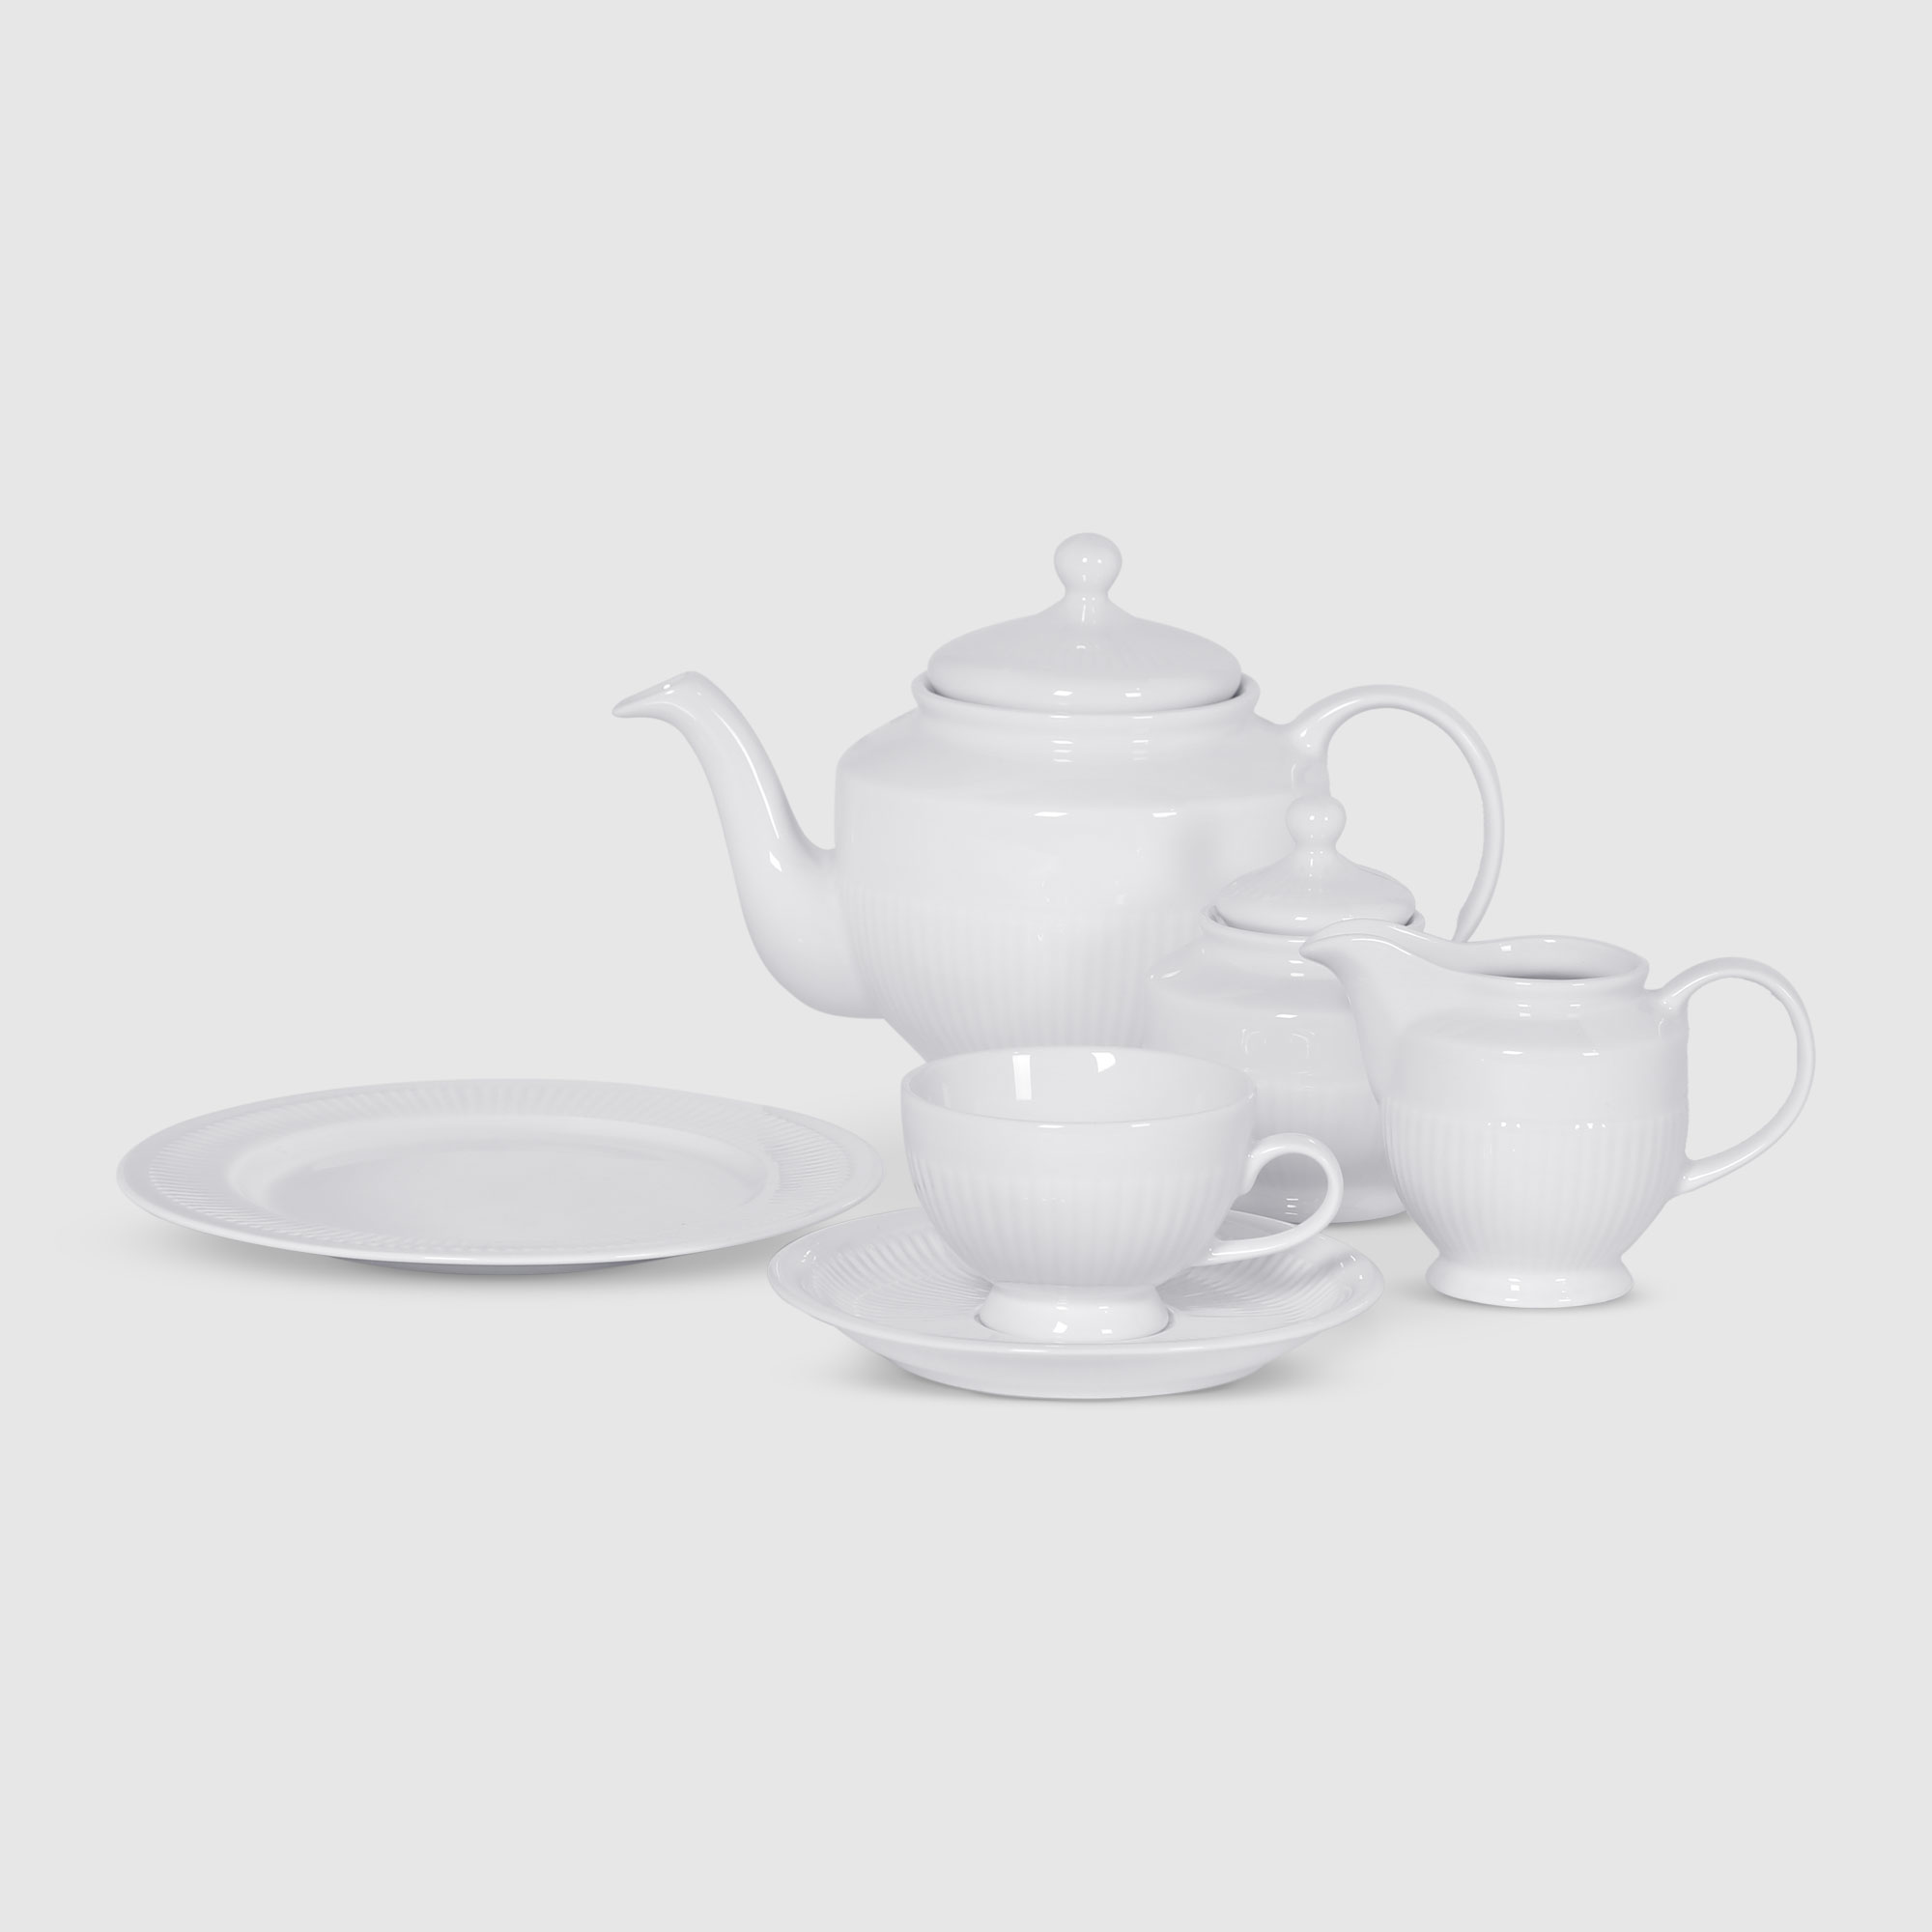 Сервиз чайный Porcelana Bogucice Minos White 21 предмет 6 персон сервиз чайный royal crown тиара 6 персон 21 предмет